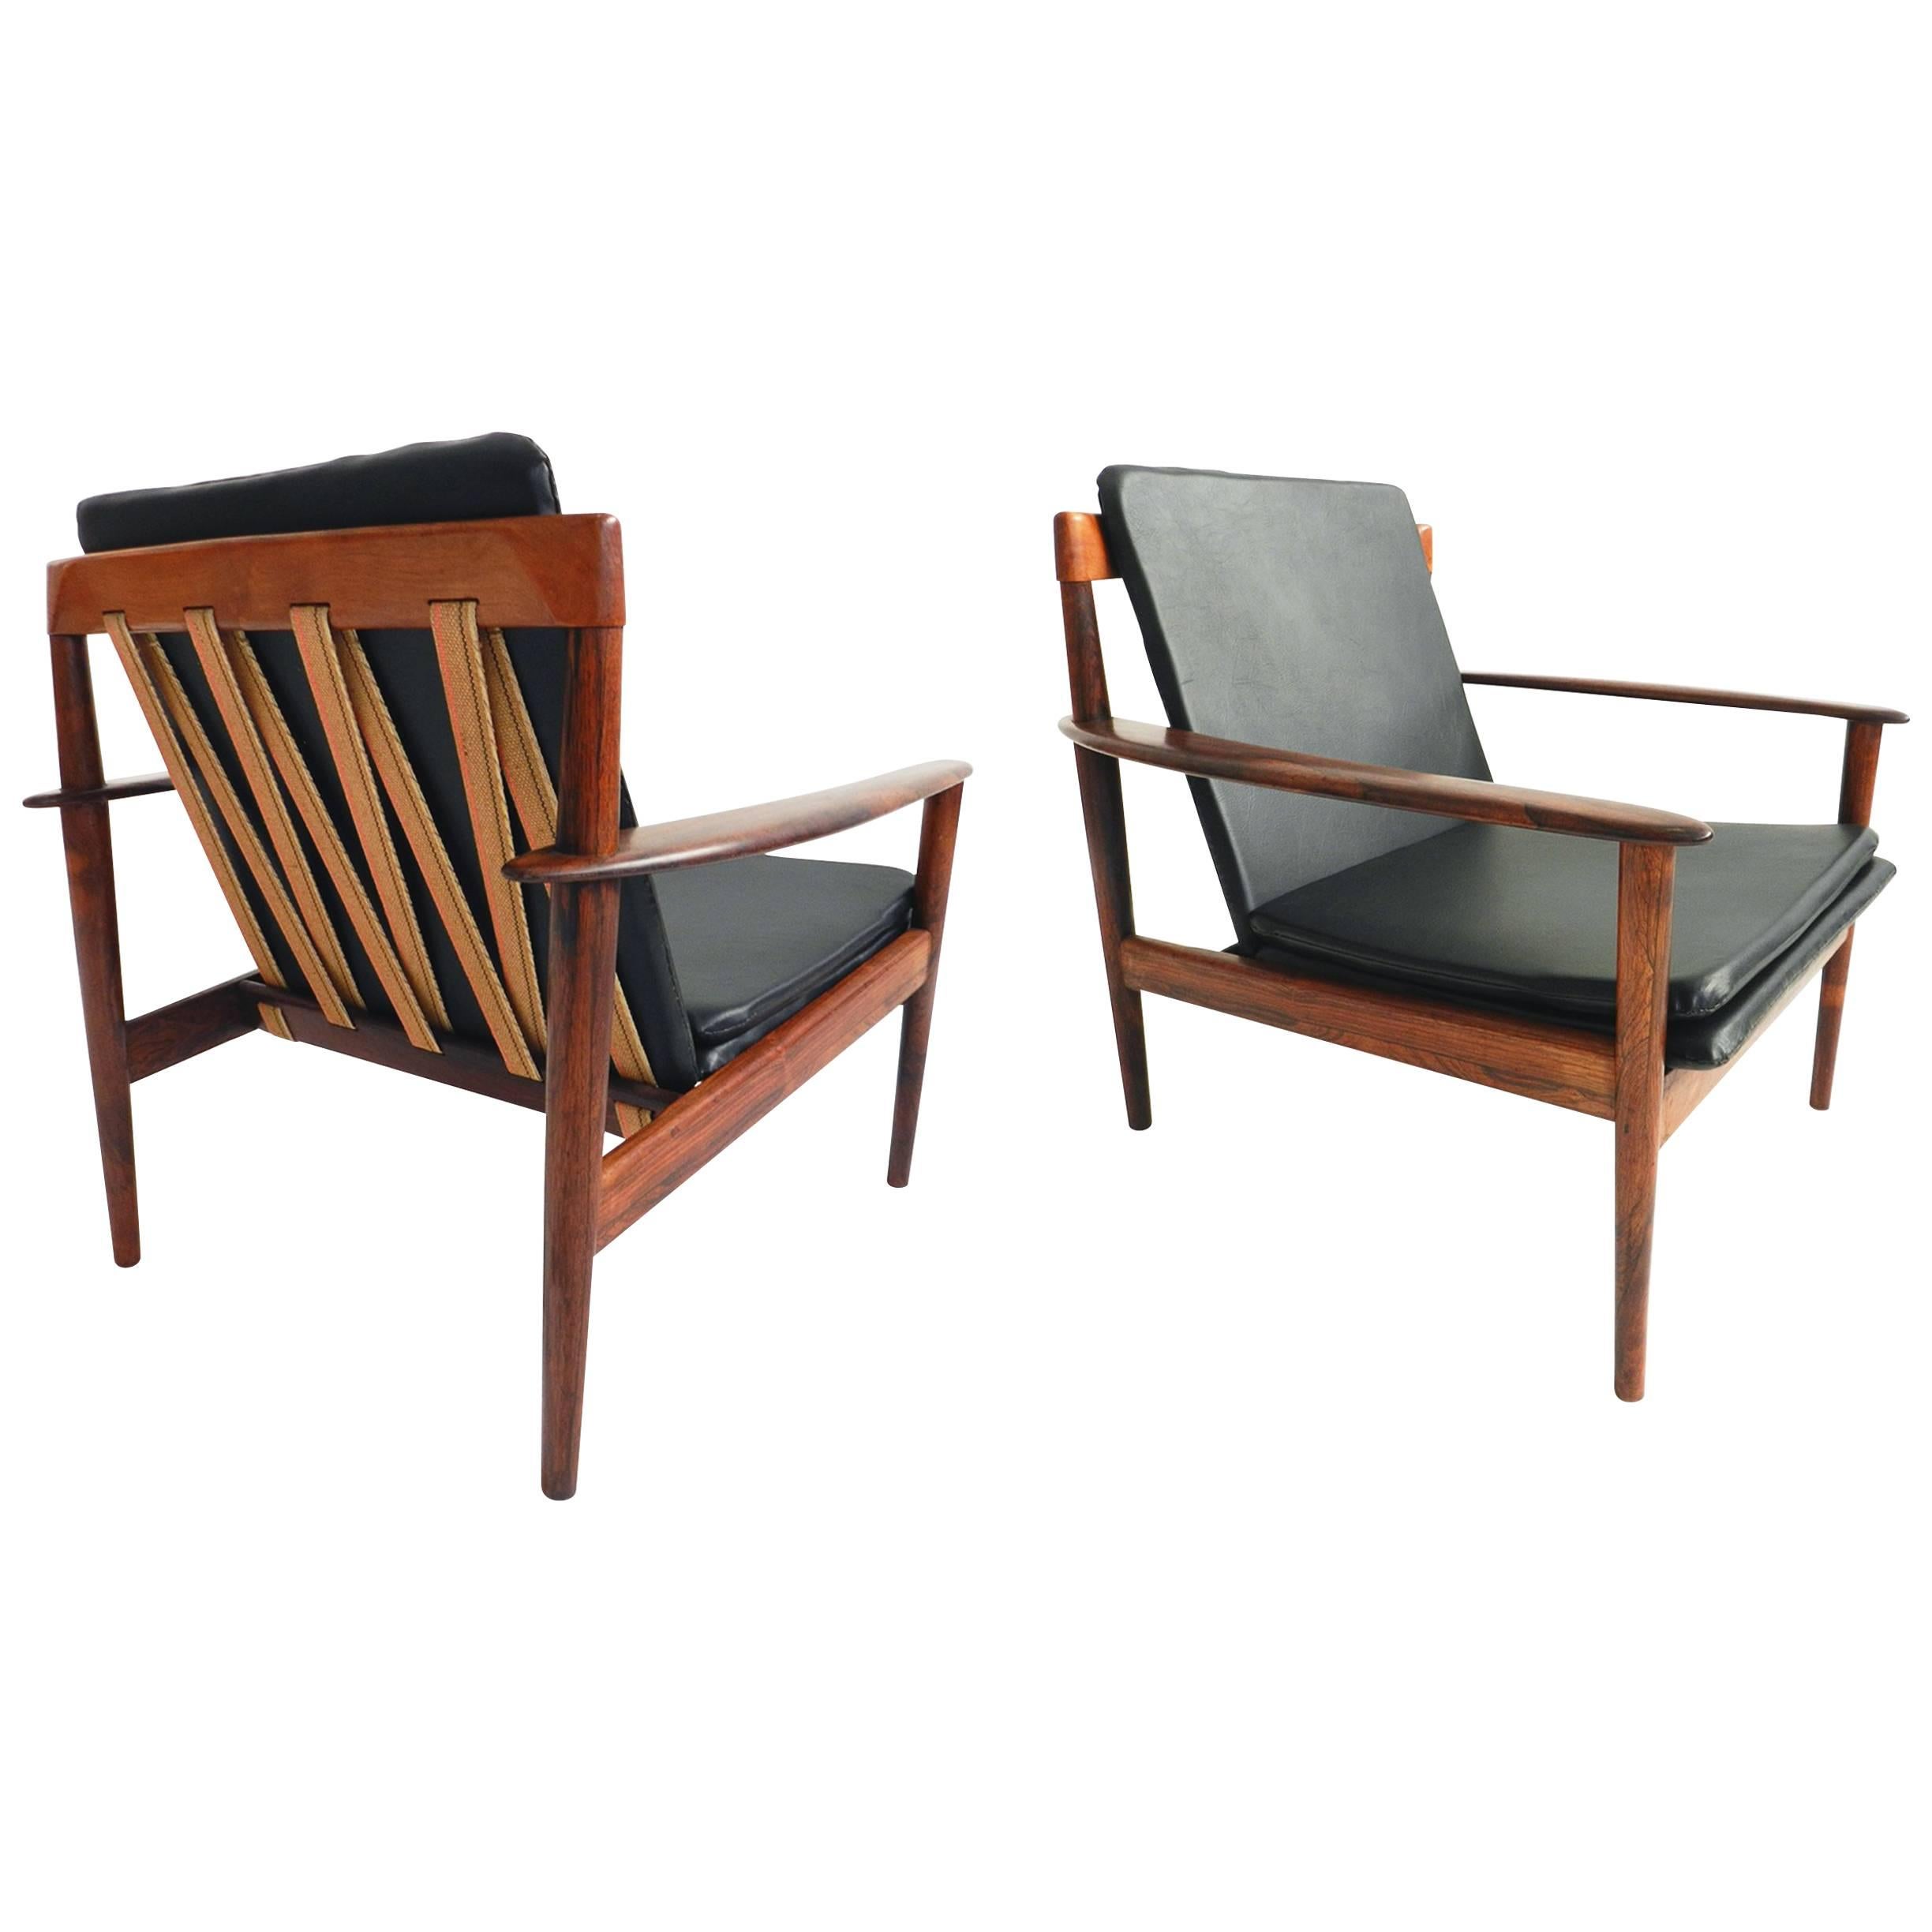 Pair of Grete Jalk Teak Easy Chairs Mod. PJ 56/1 Poul Jeppesen, Danish Modern